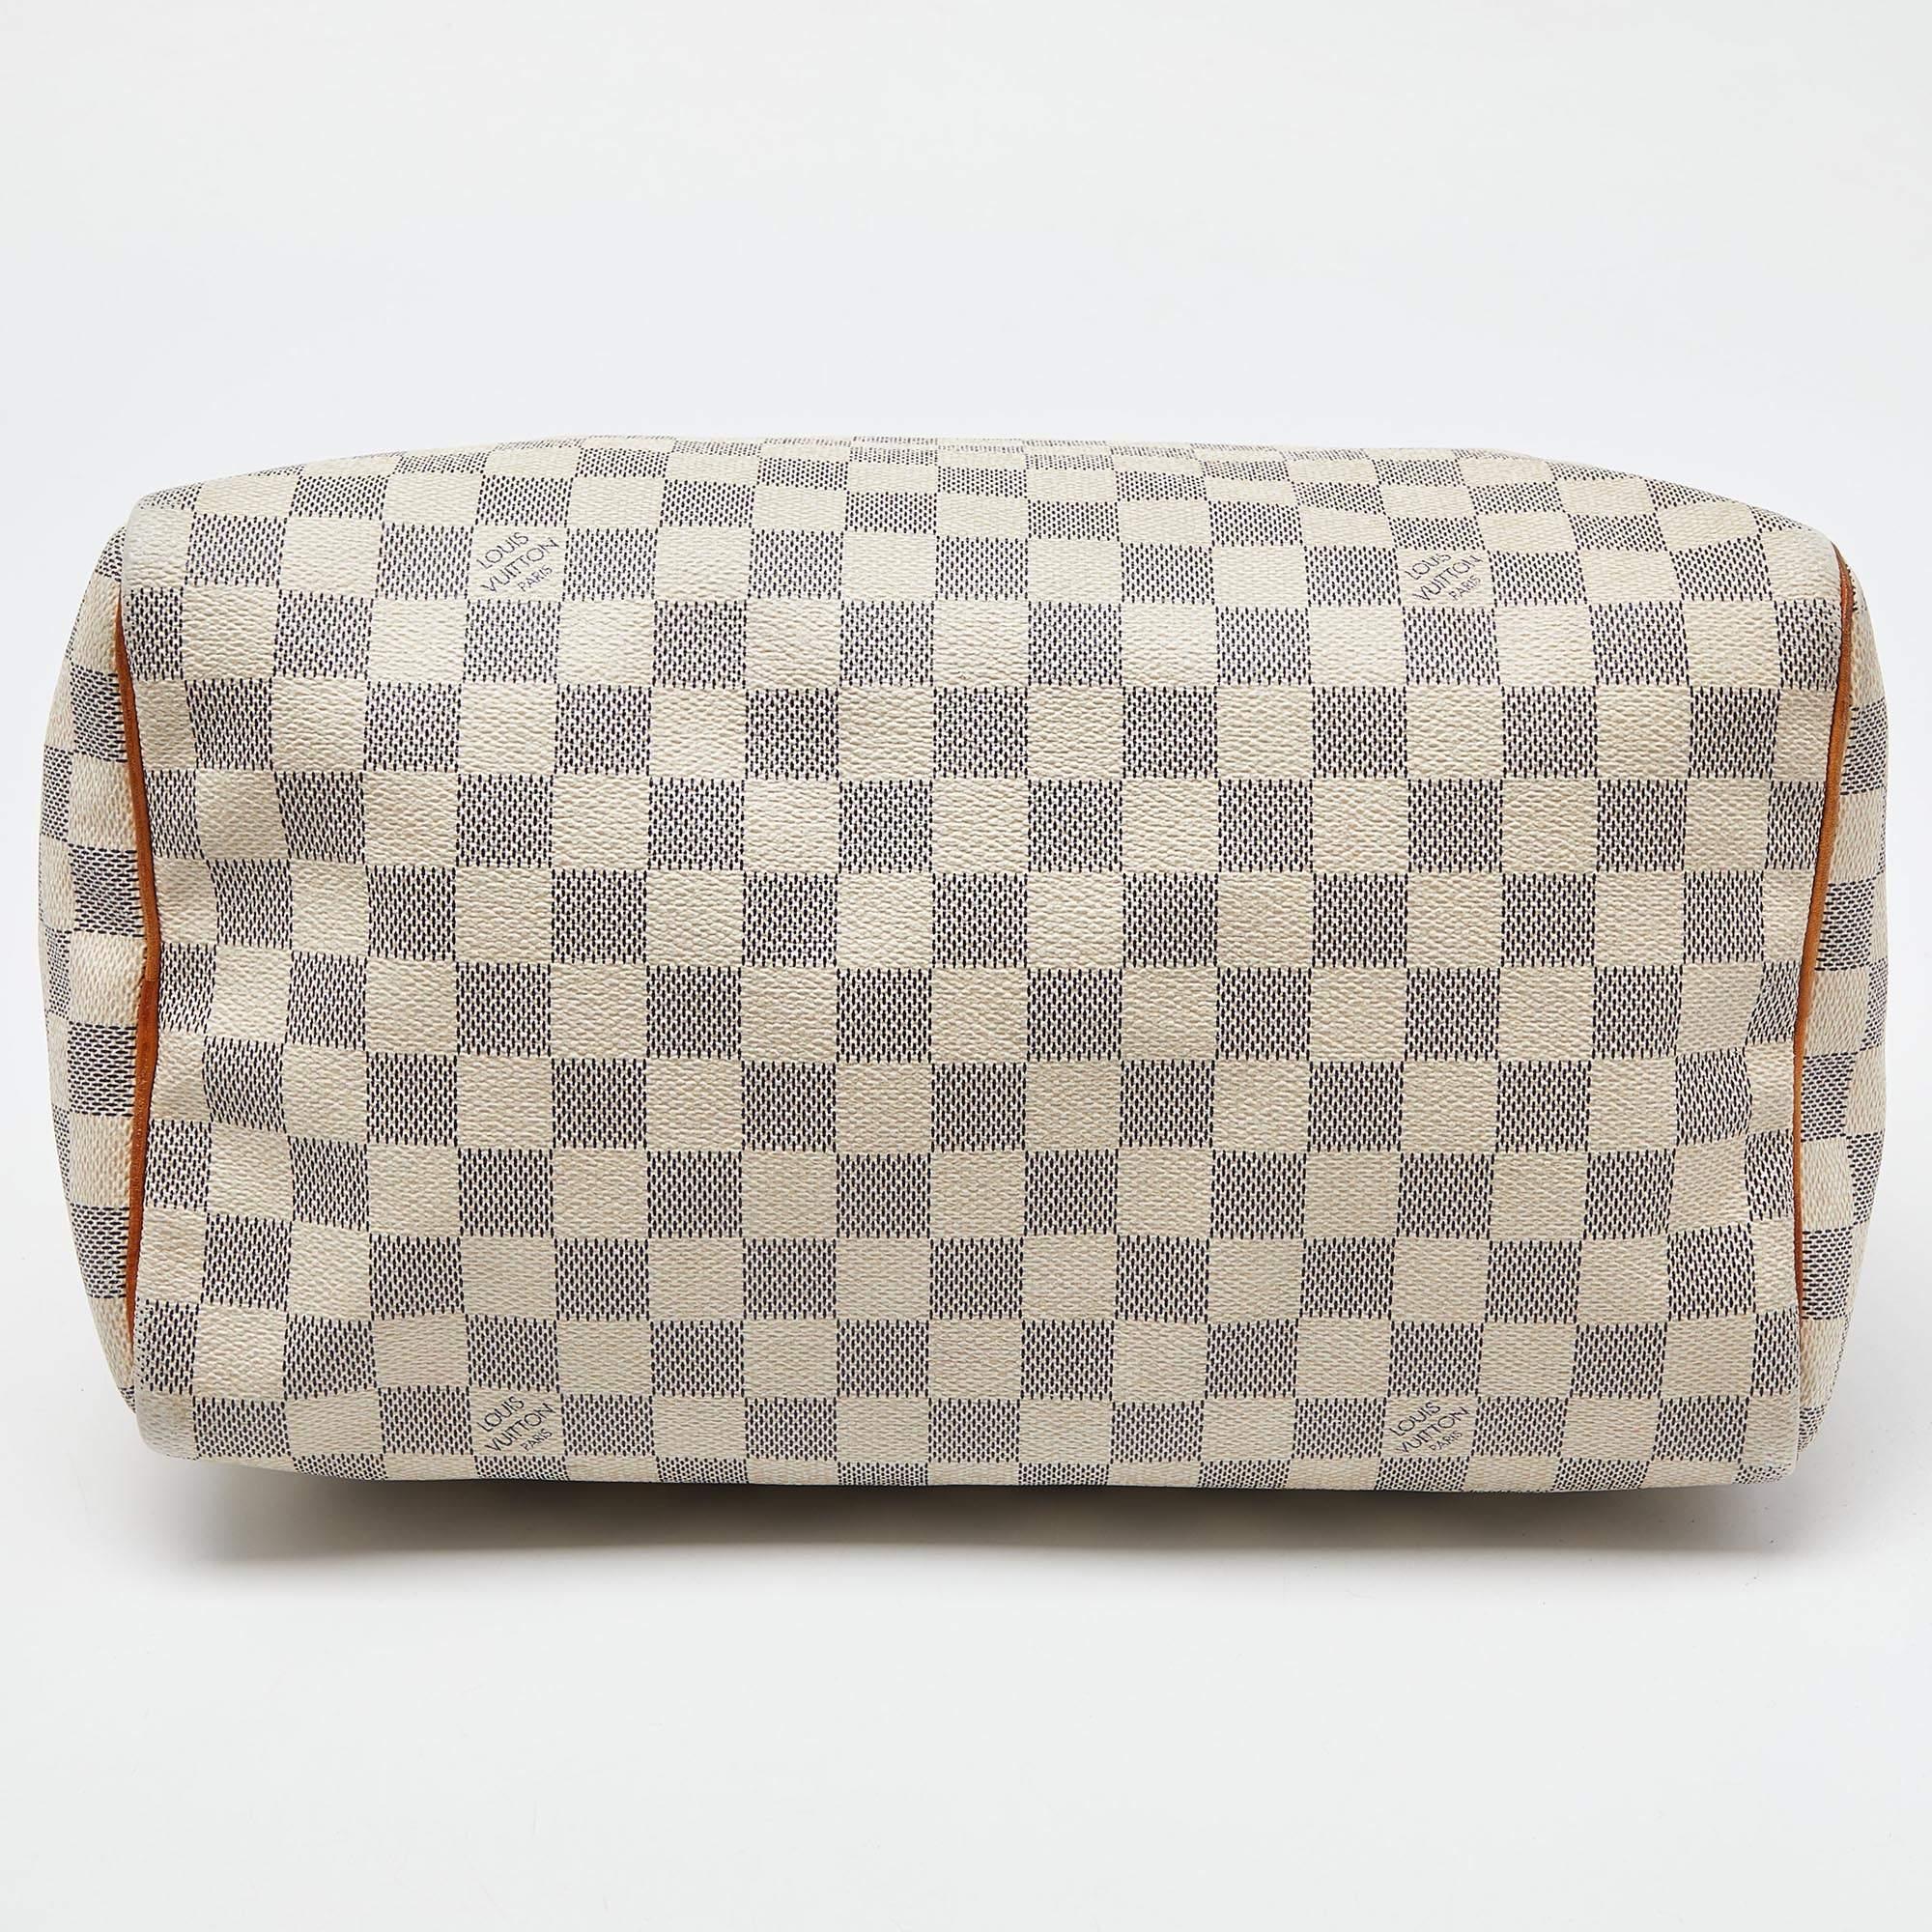 Louis Vuitton Damier Azur Canvas Speedy 30 Bag For Sale 3